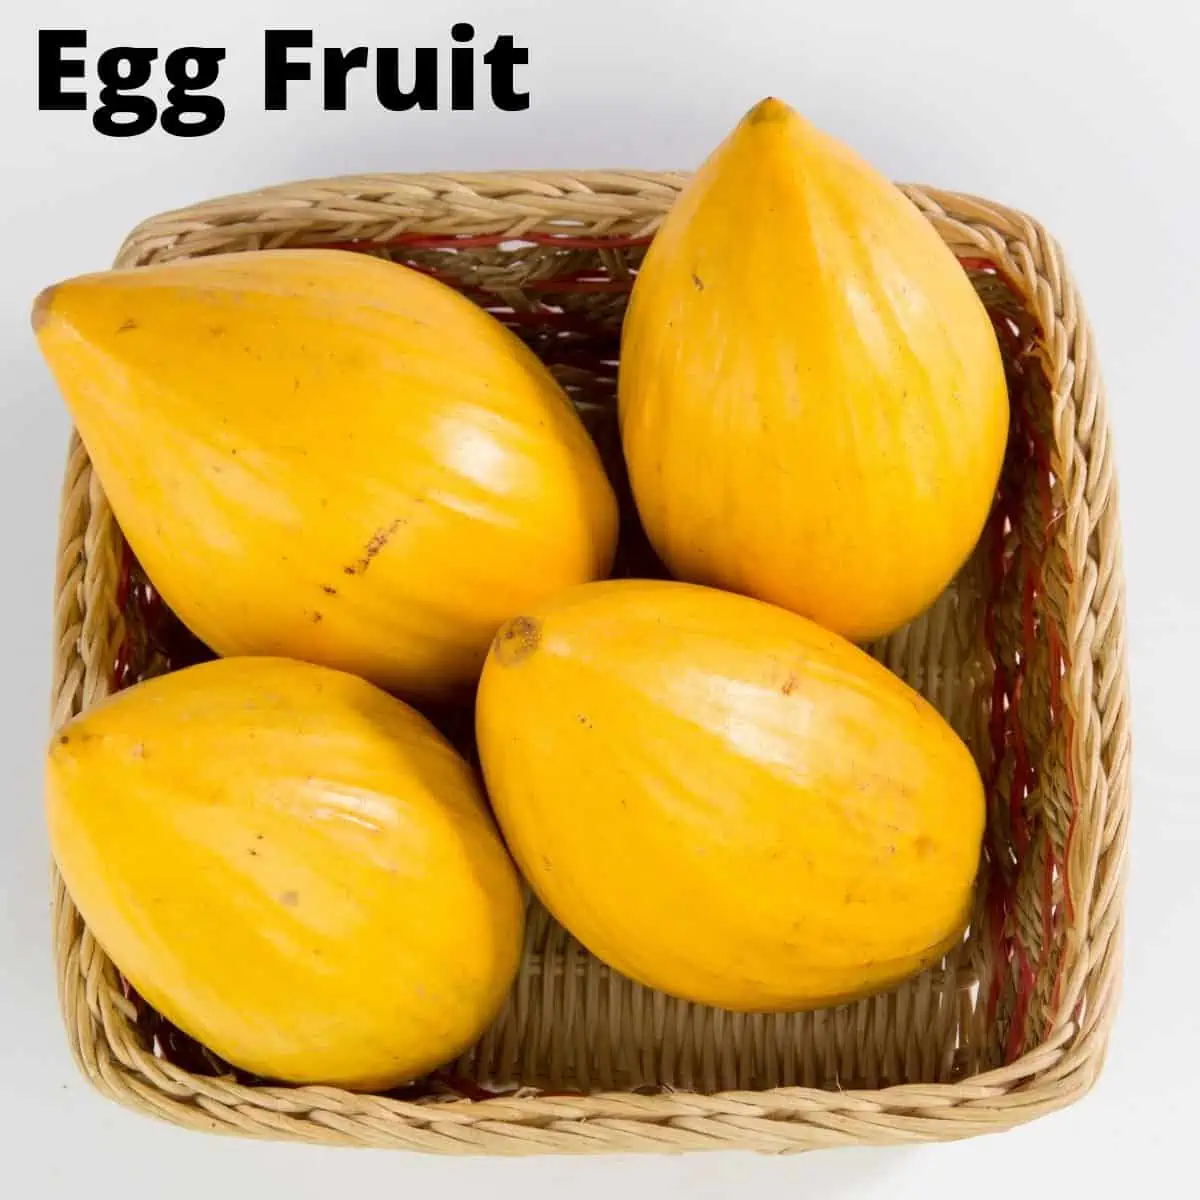 Four egg fruit in a basket. 